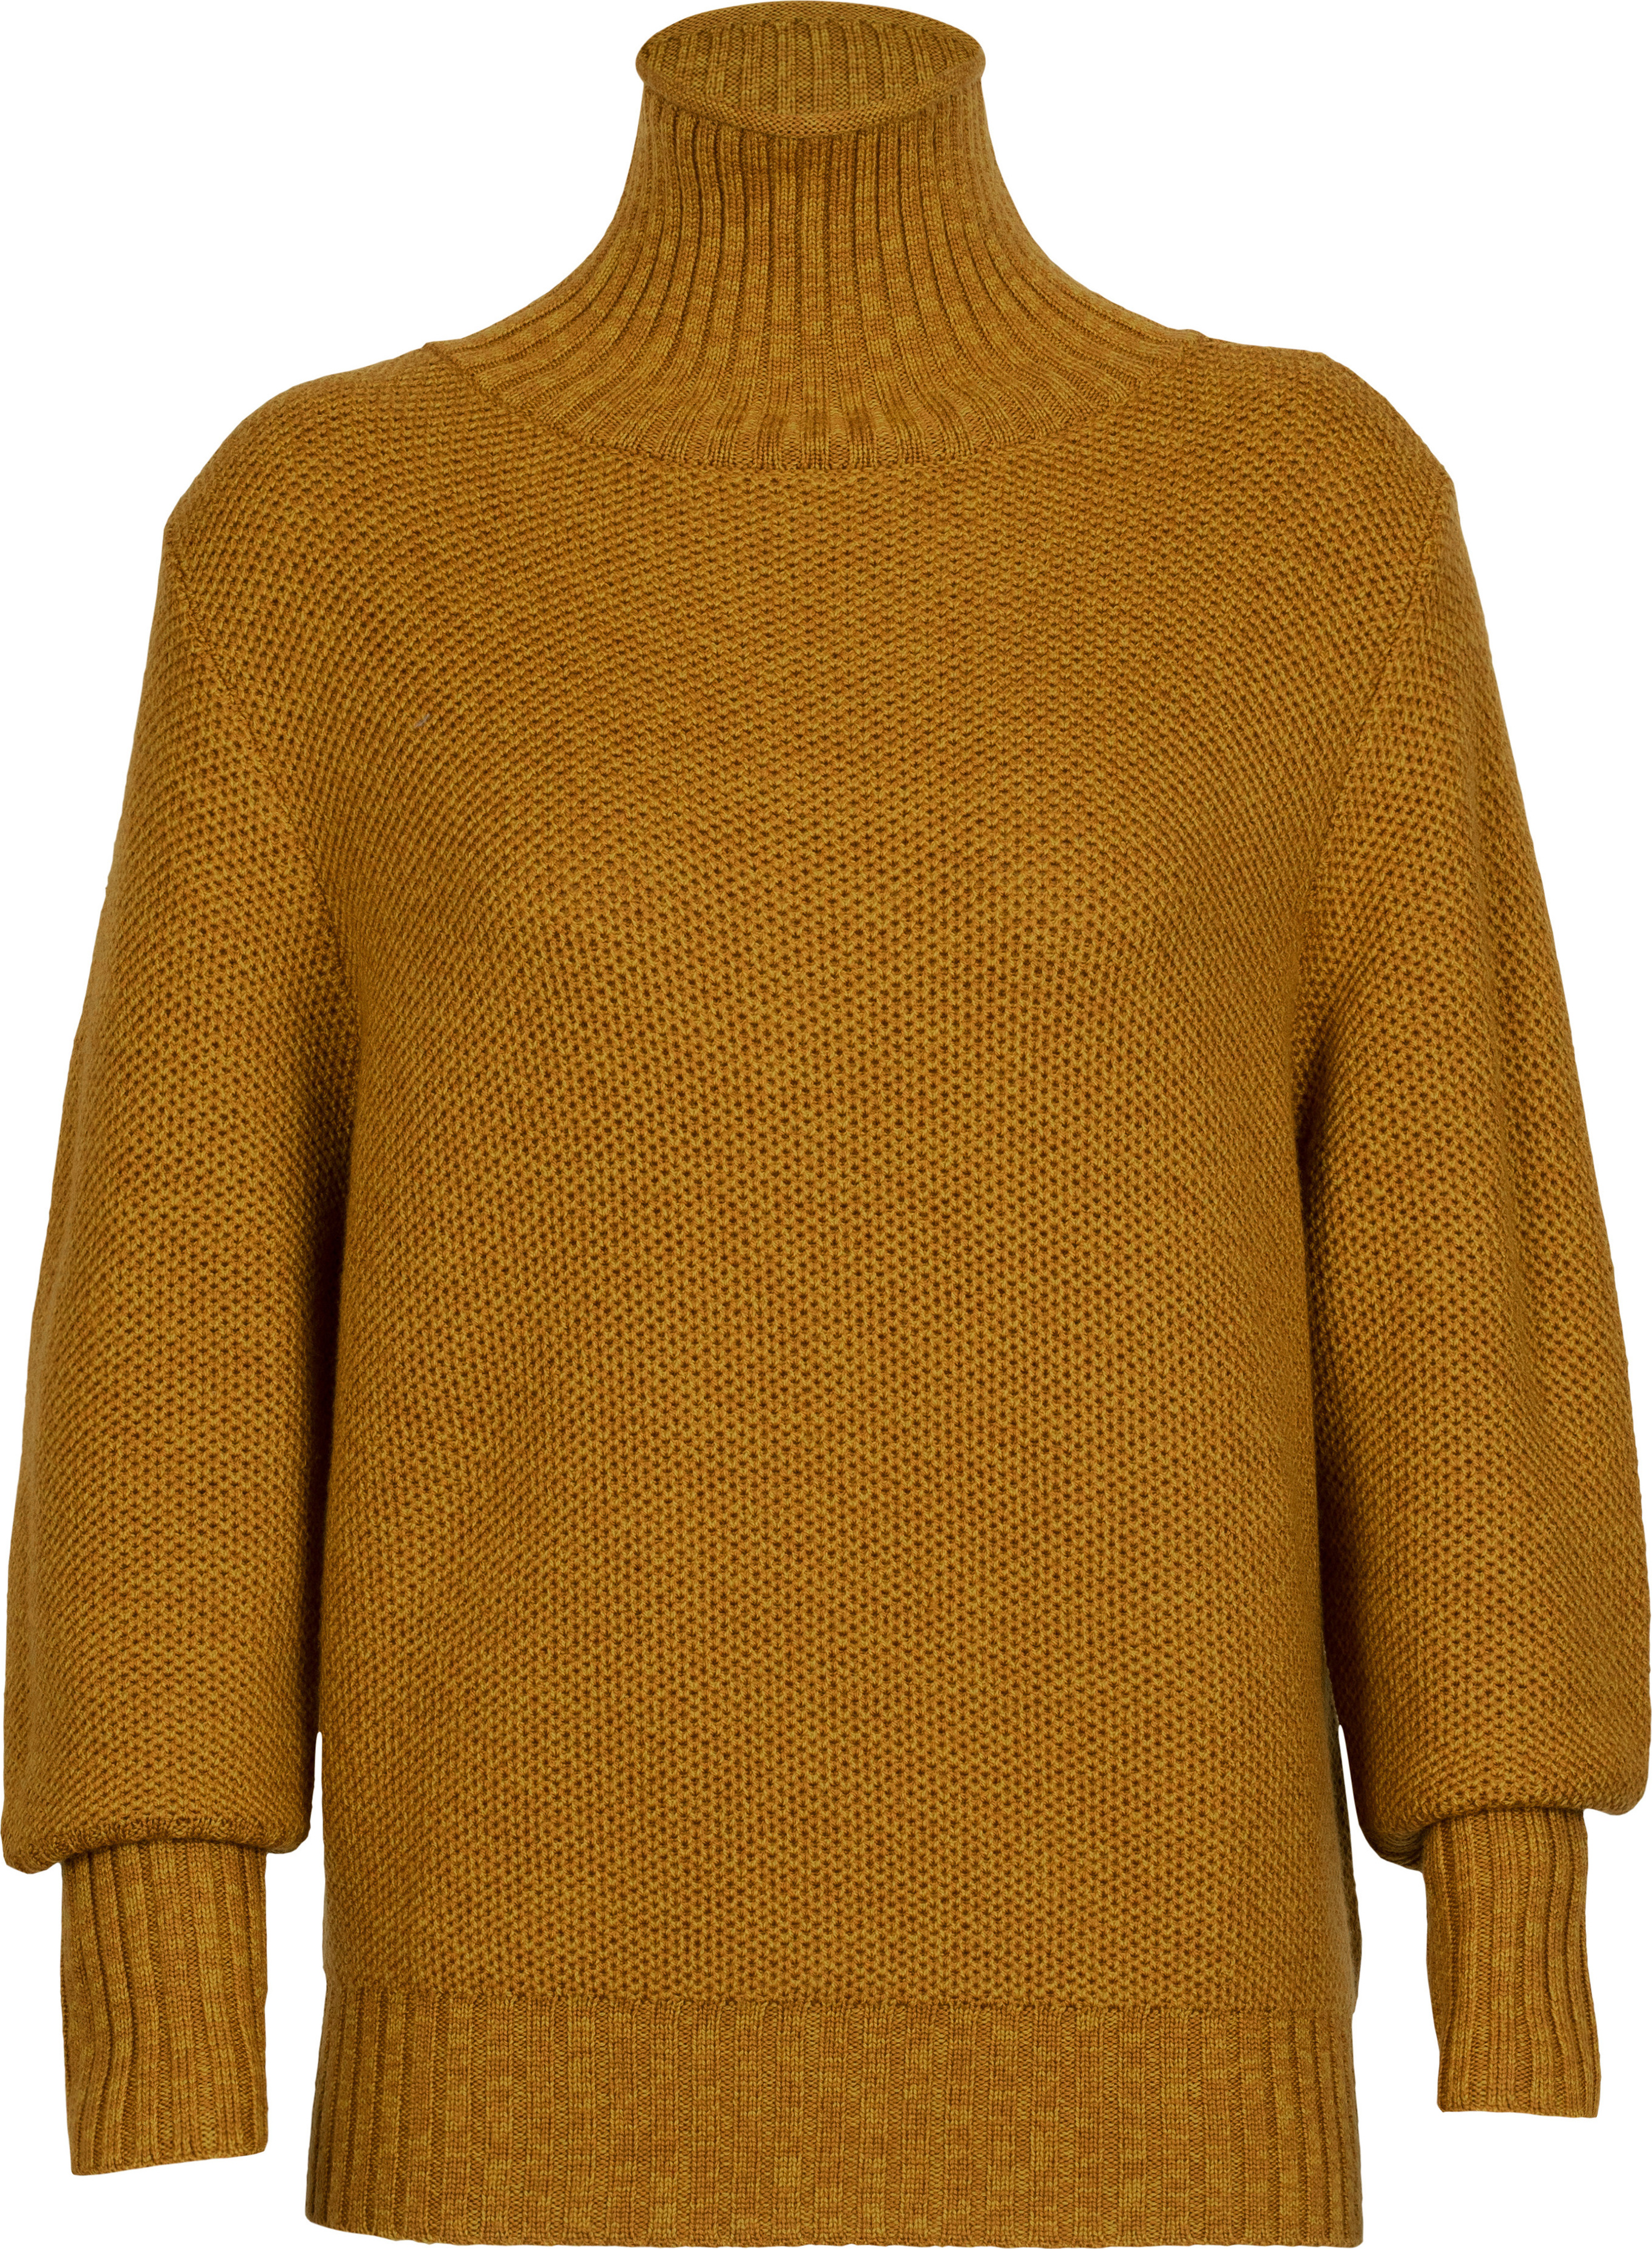 Women’s Seevista Funnel Neck Sweater CLOVE/SILENT GOLD